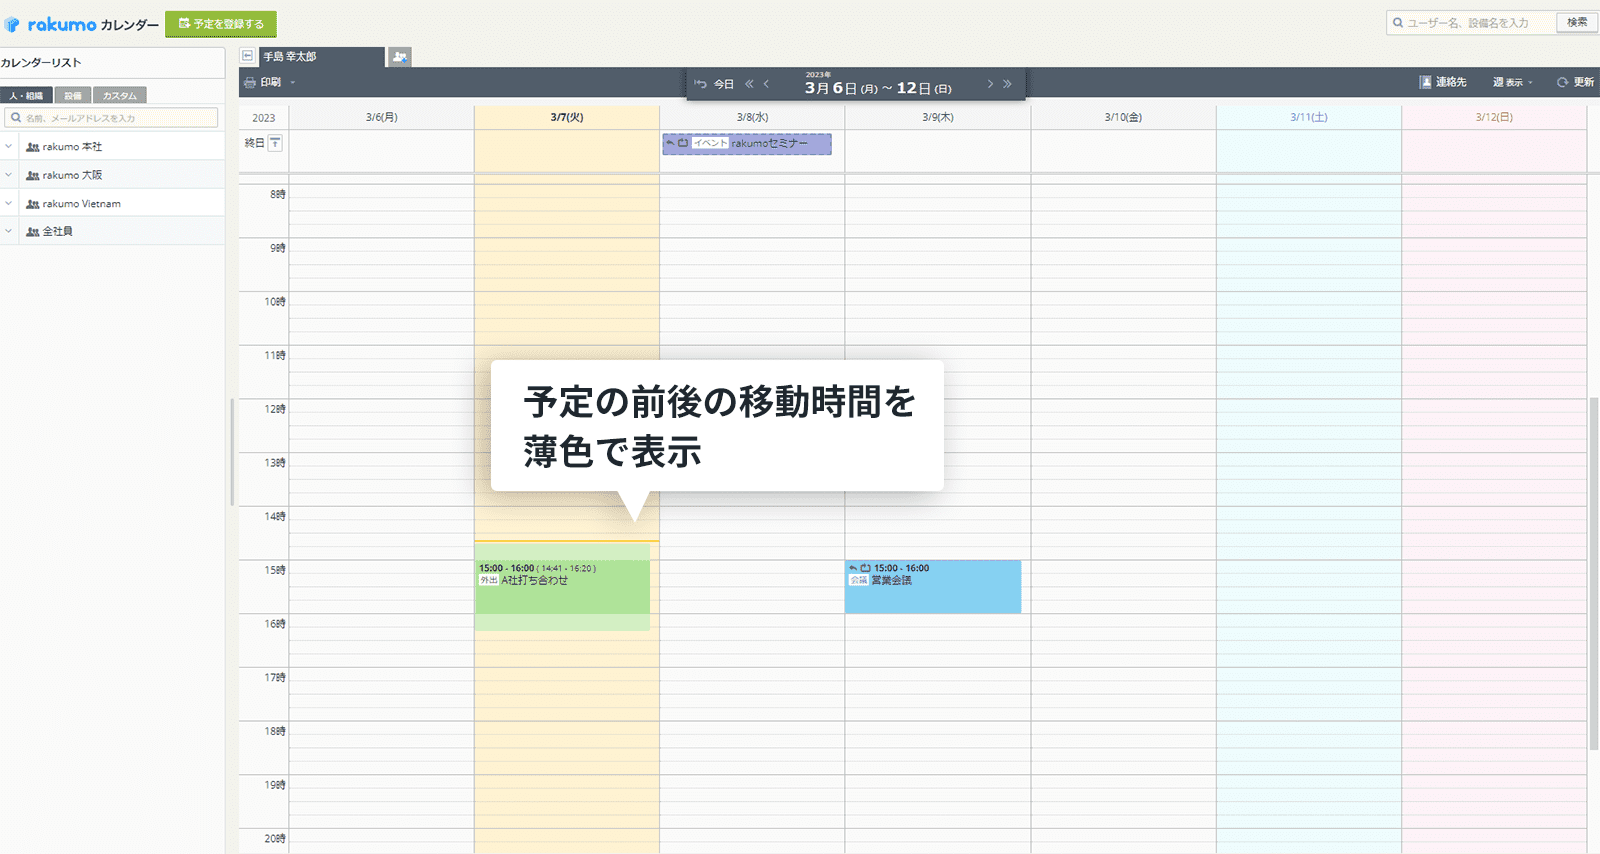 rakumo ケイヒ rakumo カレンダーでは予定前後の移動時間を薄色で表示